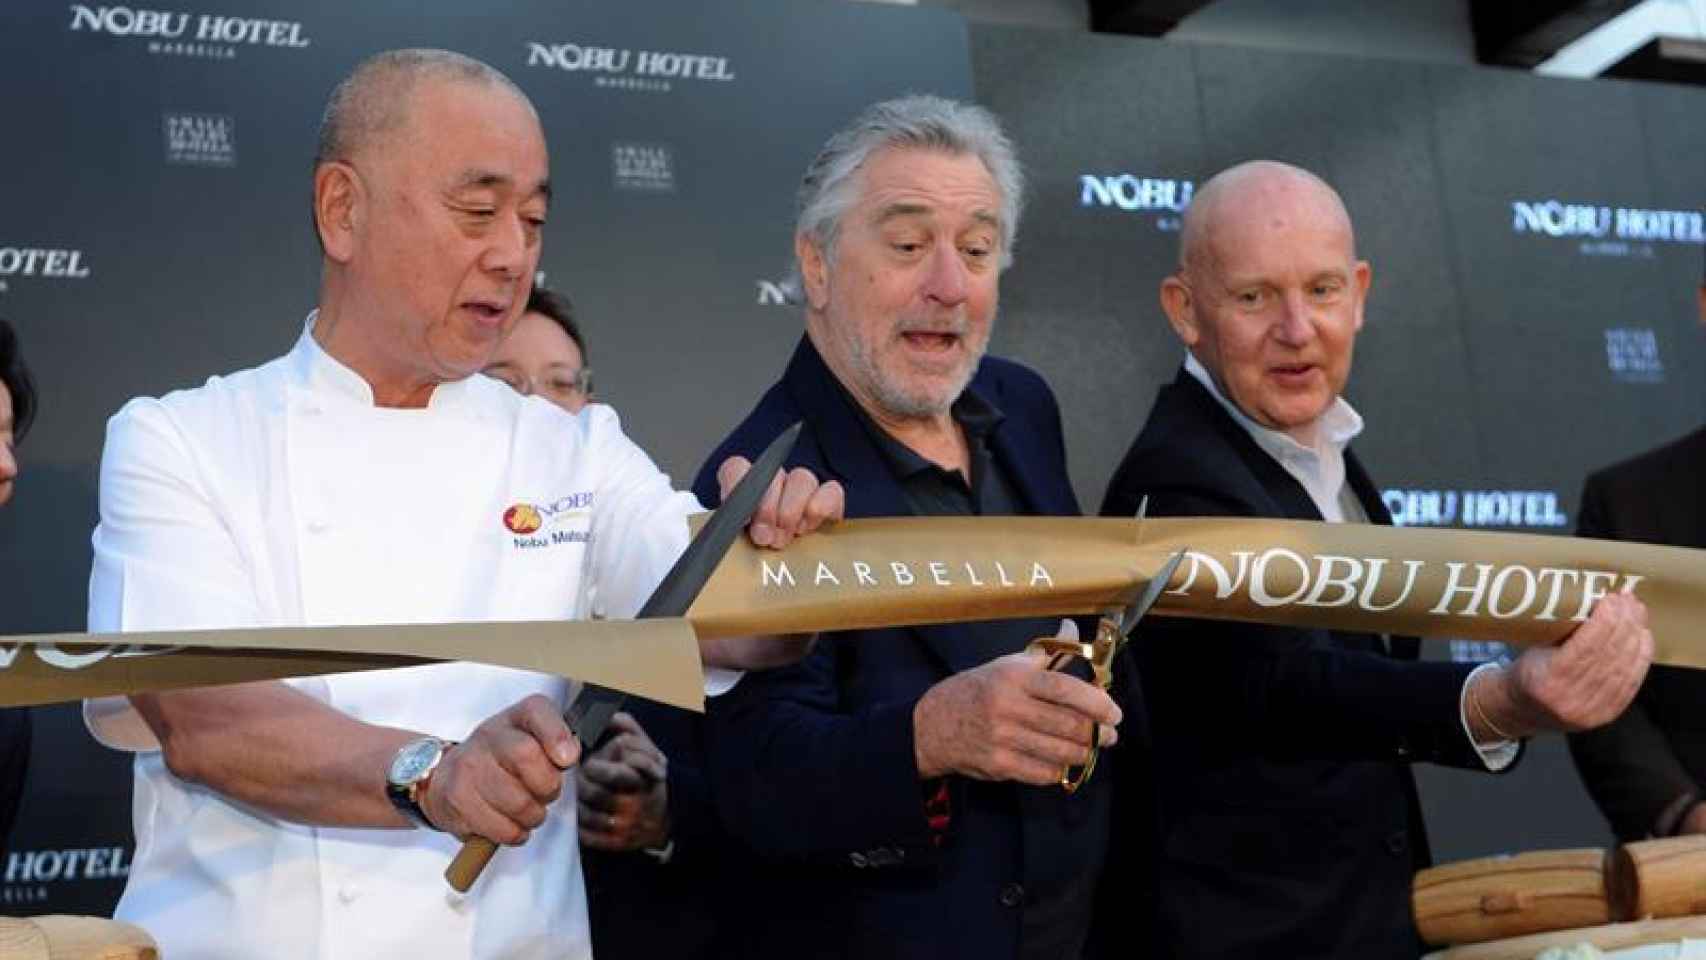 El actor Robert de Niro inaugura el hotel Nobu en Marbella junto a sus socios.